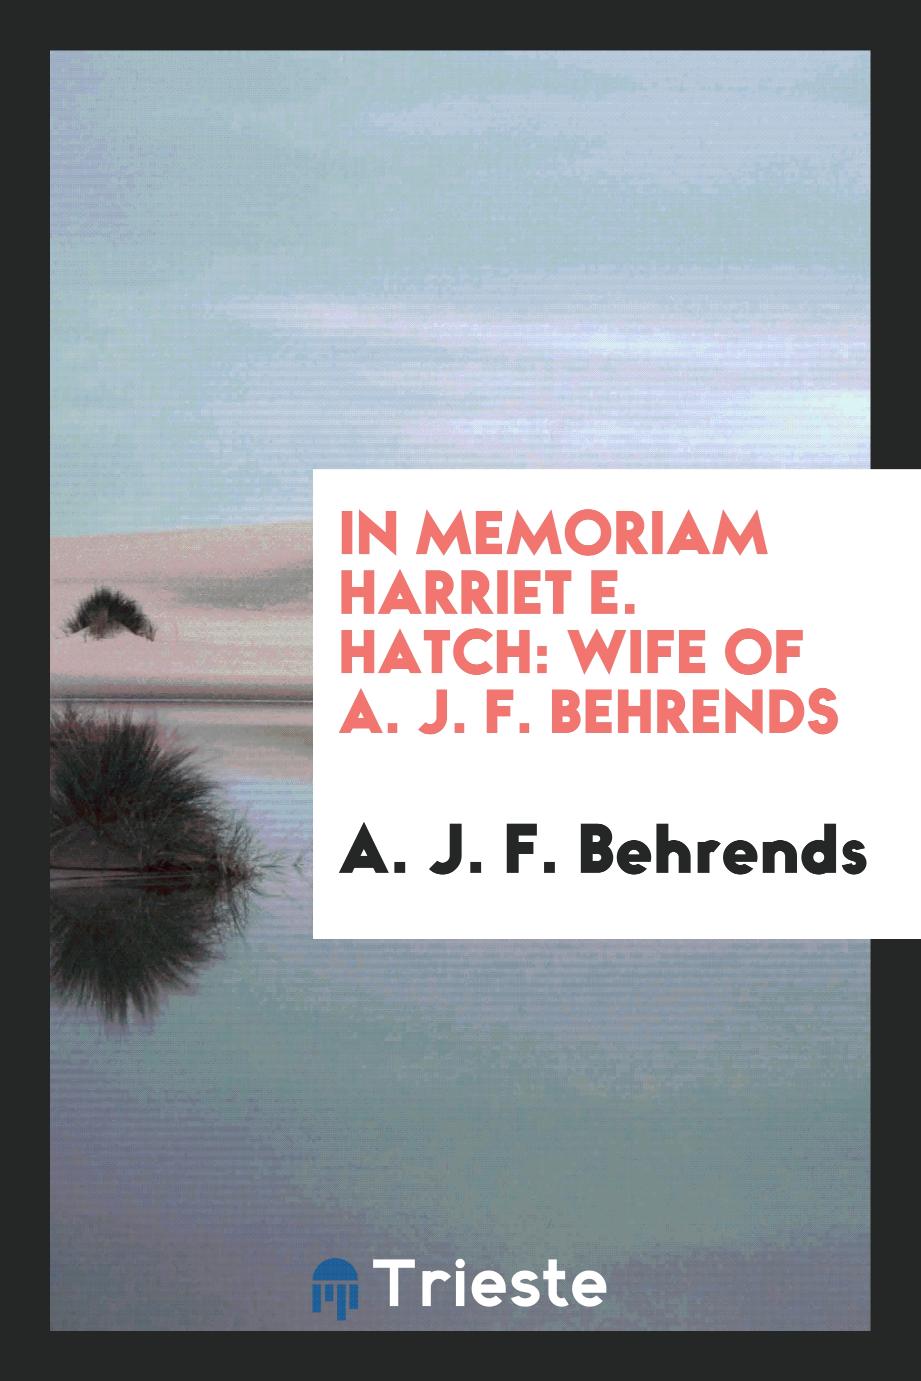 In Memoriam Harriet E. Hatch: Wife of A. J. F. Behrends